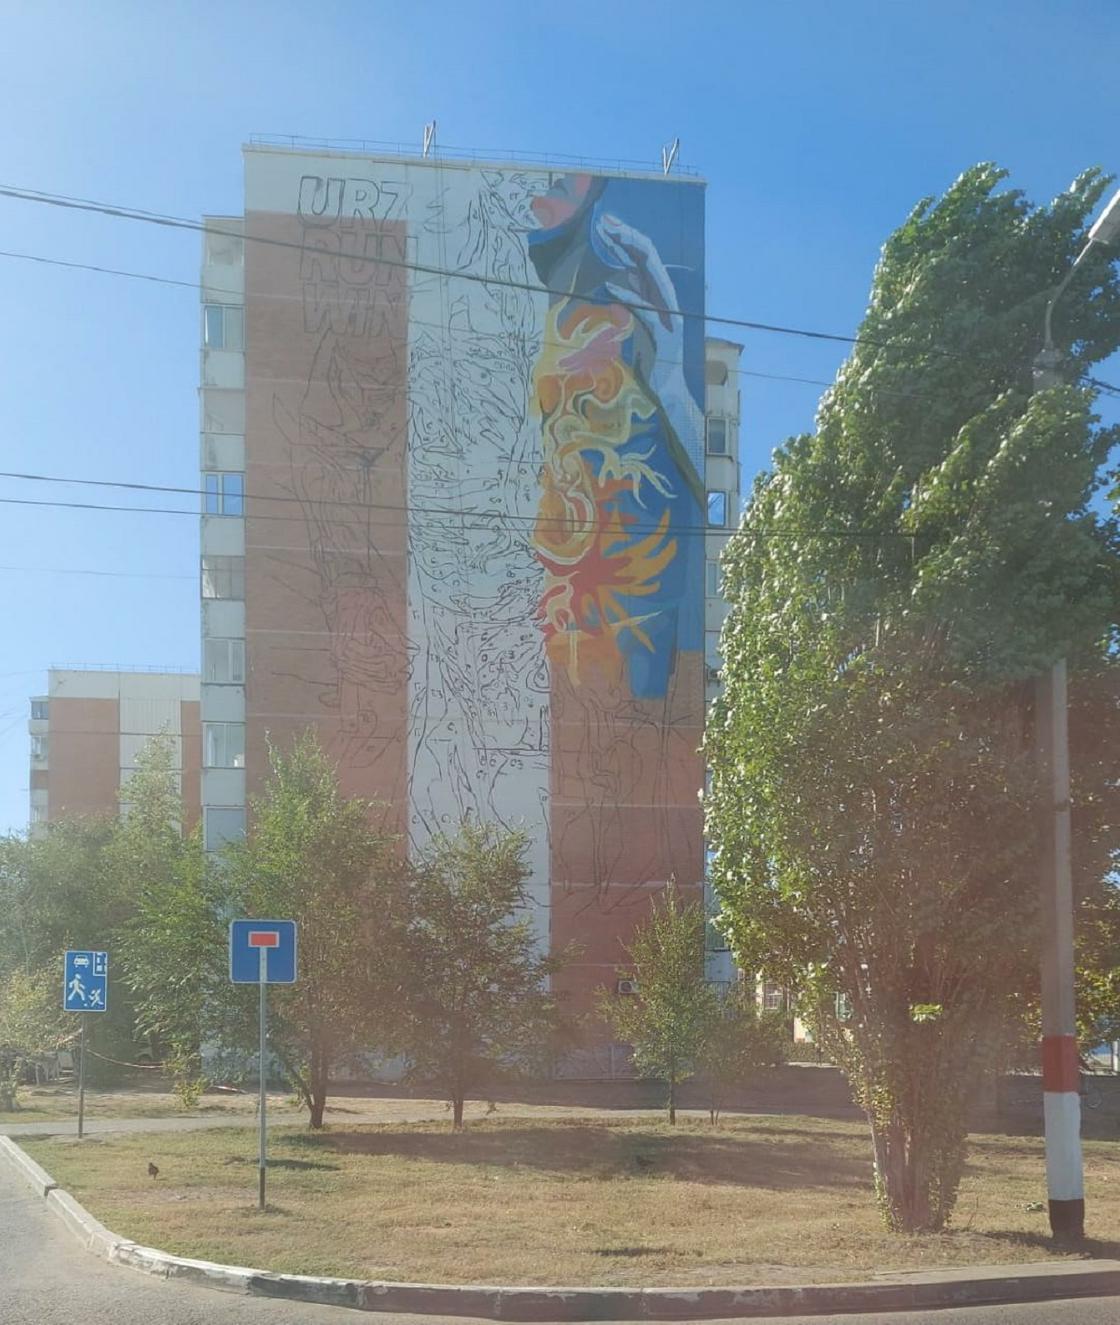 Дом с граффити в Уральске, где погиб волонтер